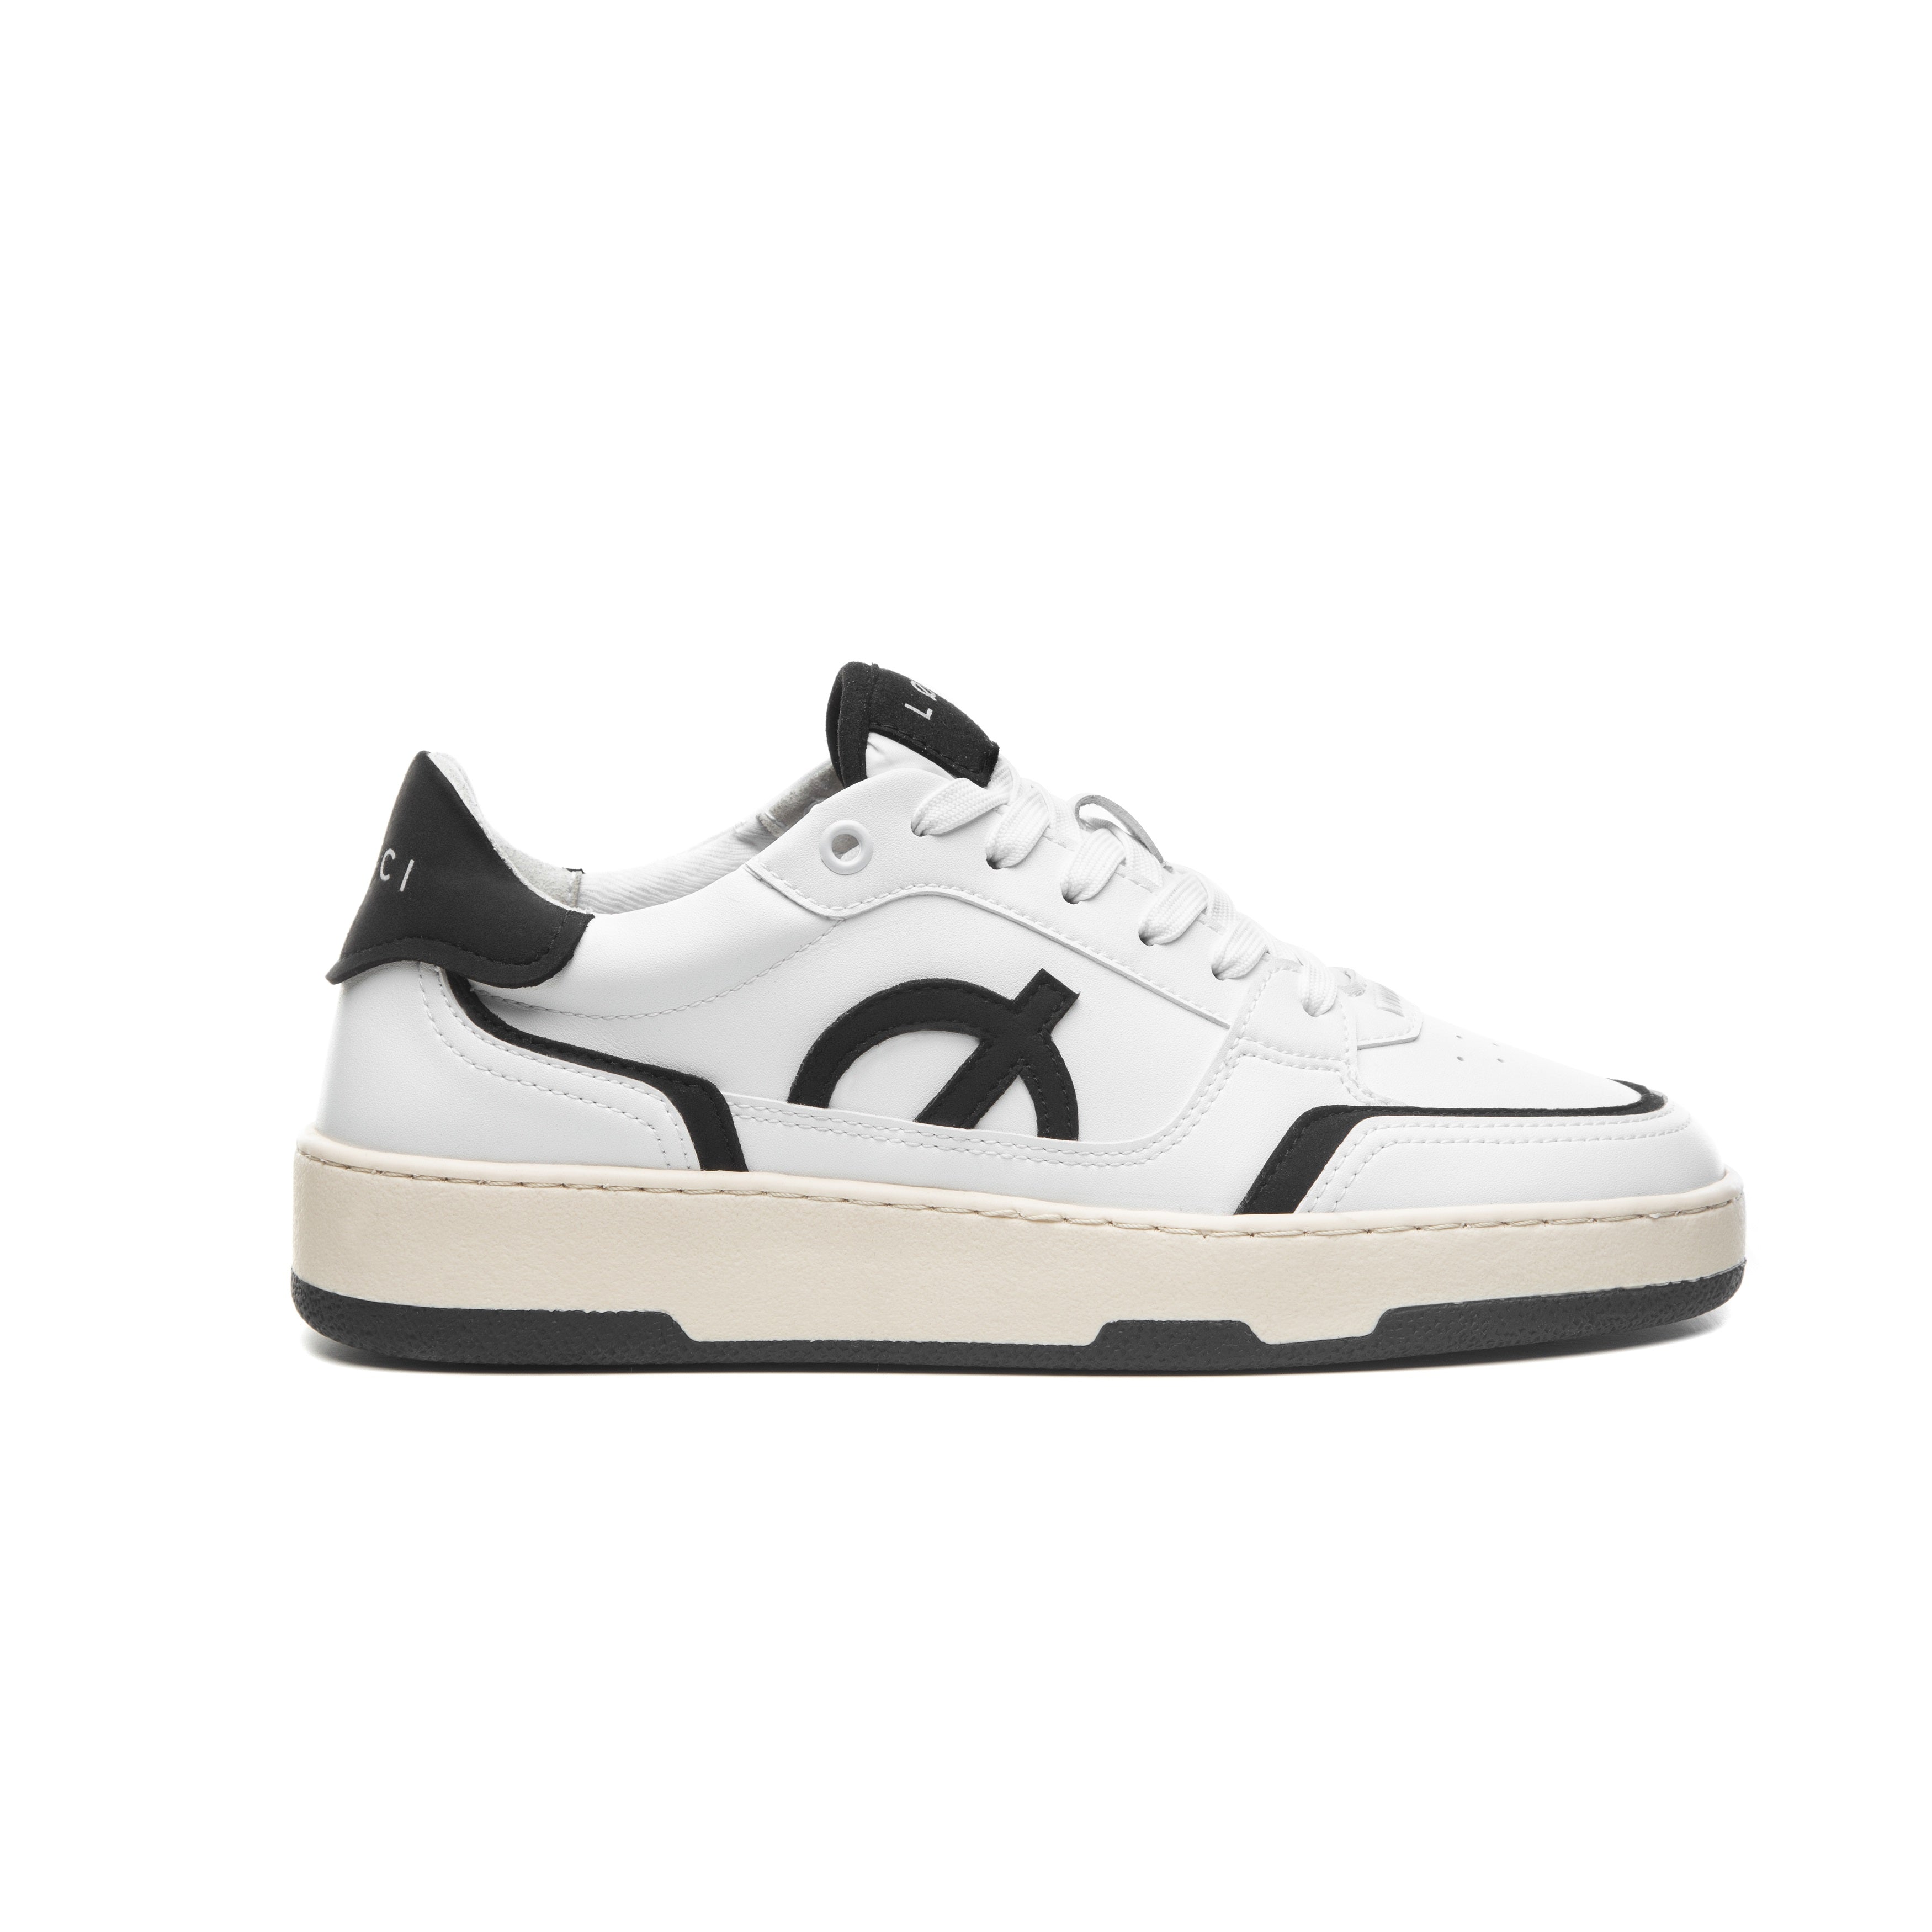 Loci Neo Sneaker White/Black/Cream 3.5 